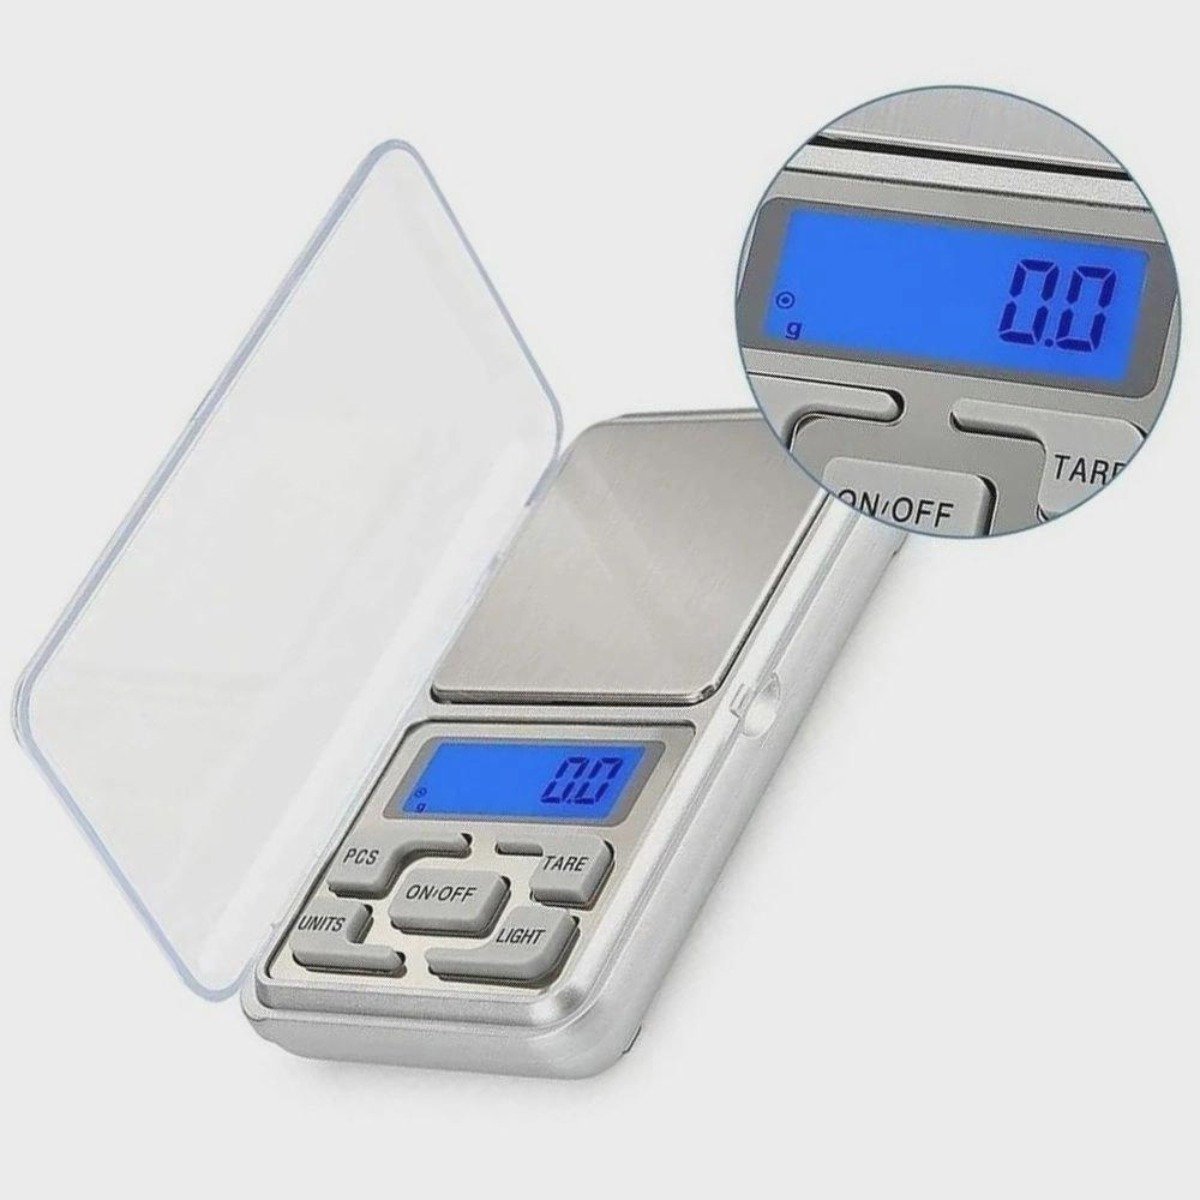 Mini Balança Digital Alta Precisão De Bolso Portátil 500g - 2